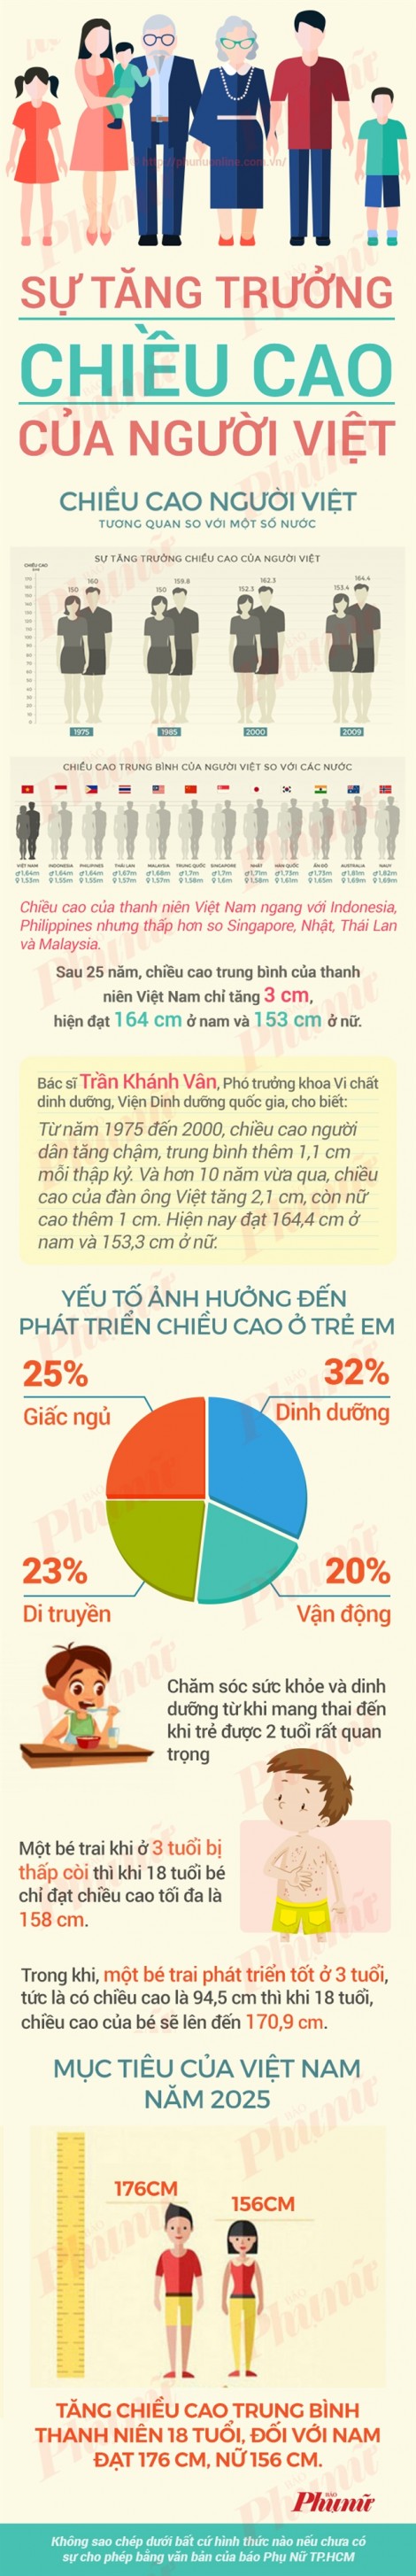 So sánh chiều cao của thanh niên Việt Nam với các nước châu Á